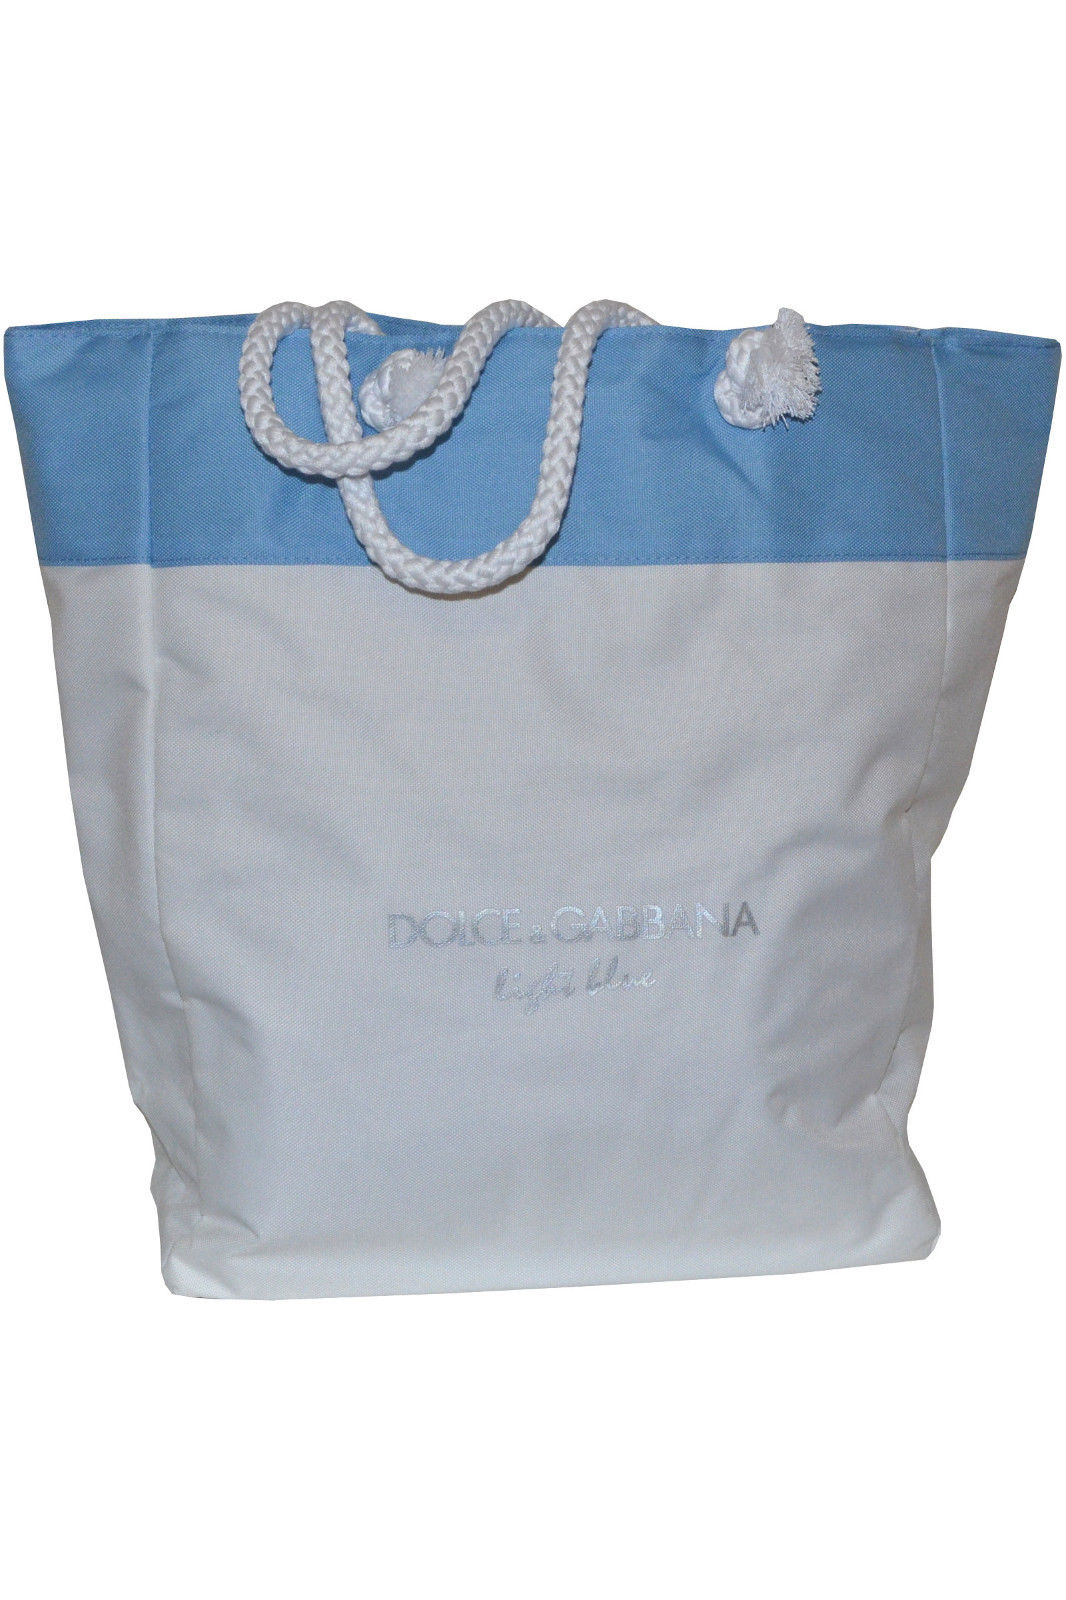 dolce and gabbana shopping bag